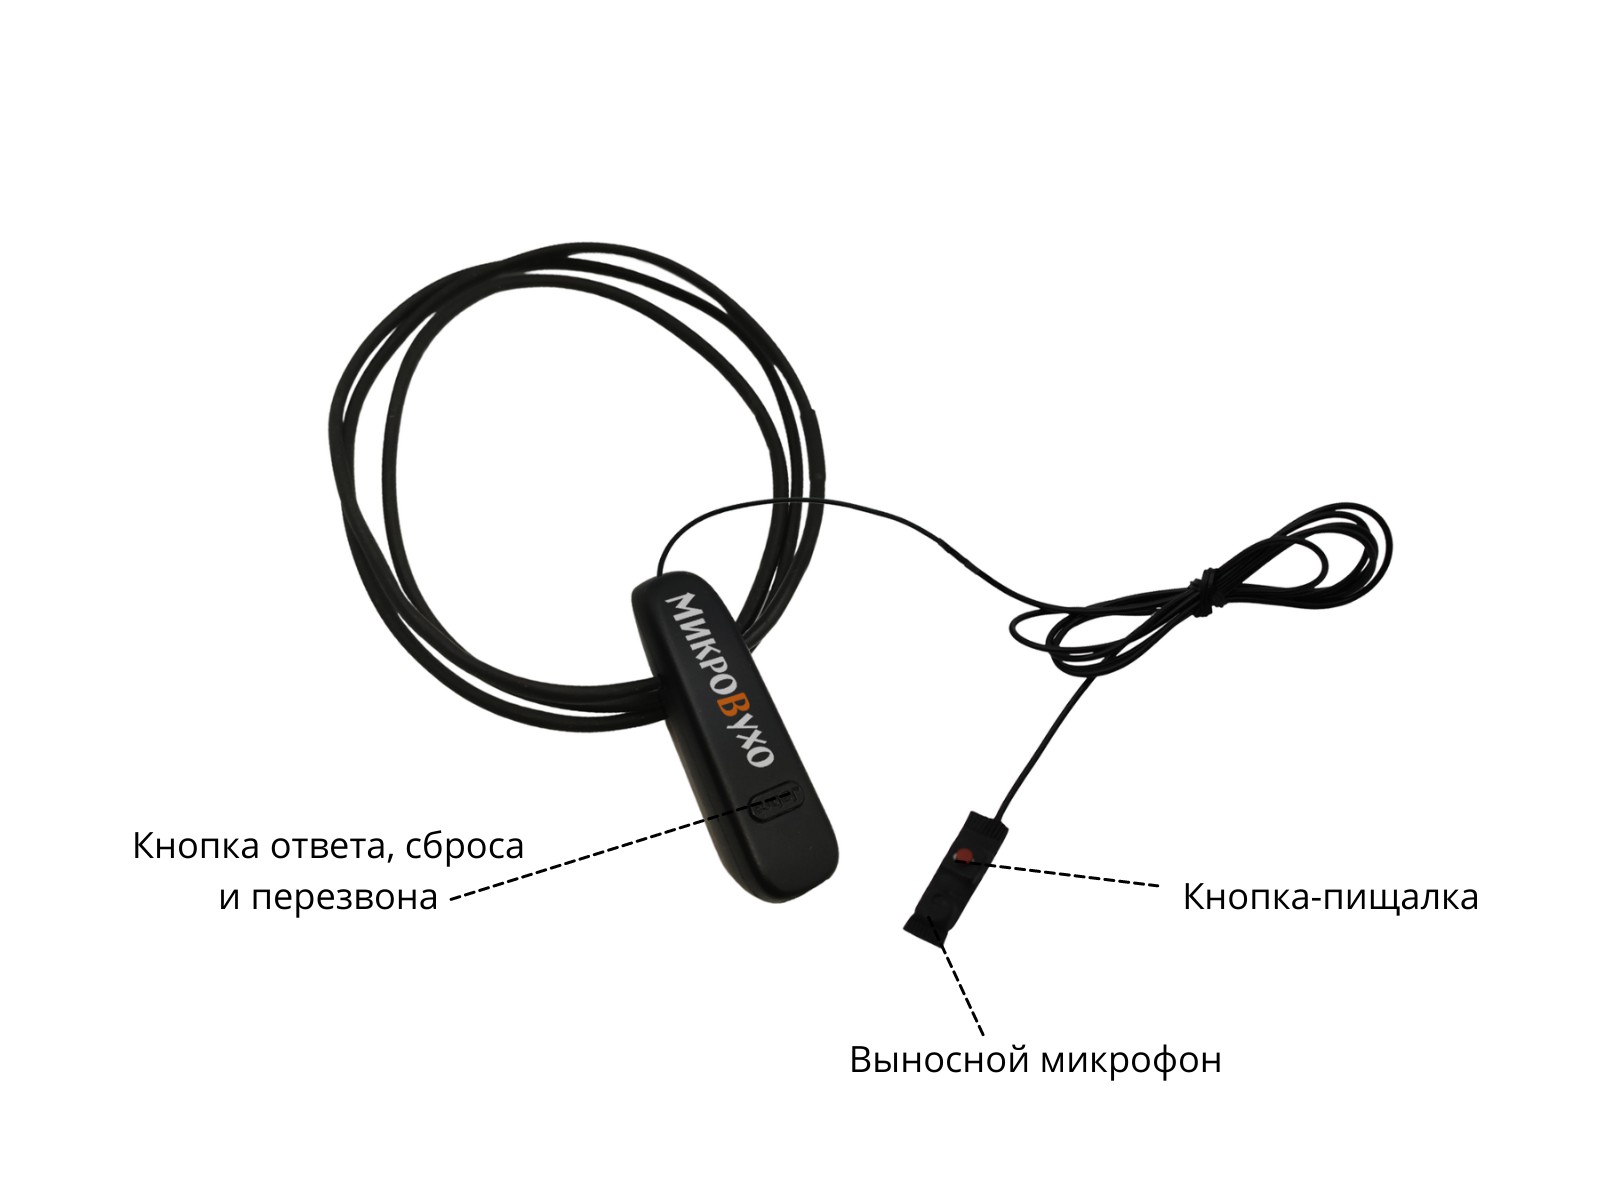 Гарнитура Bluetooth Jabra с магнитными микронаушниками 2 мм 4